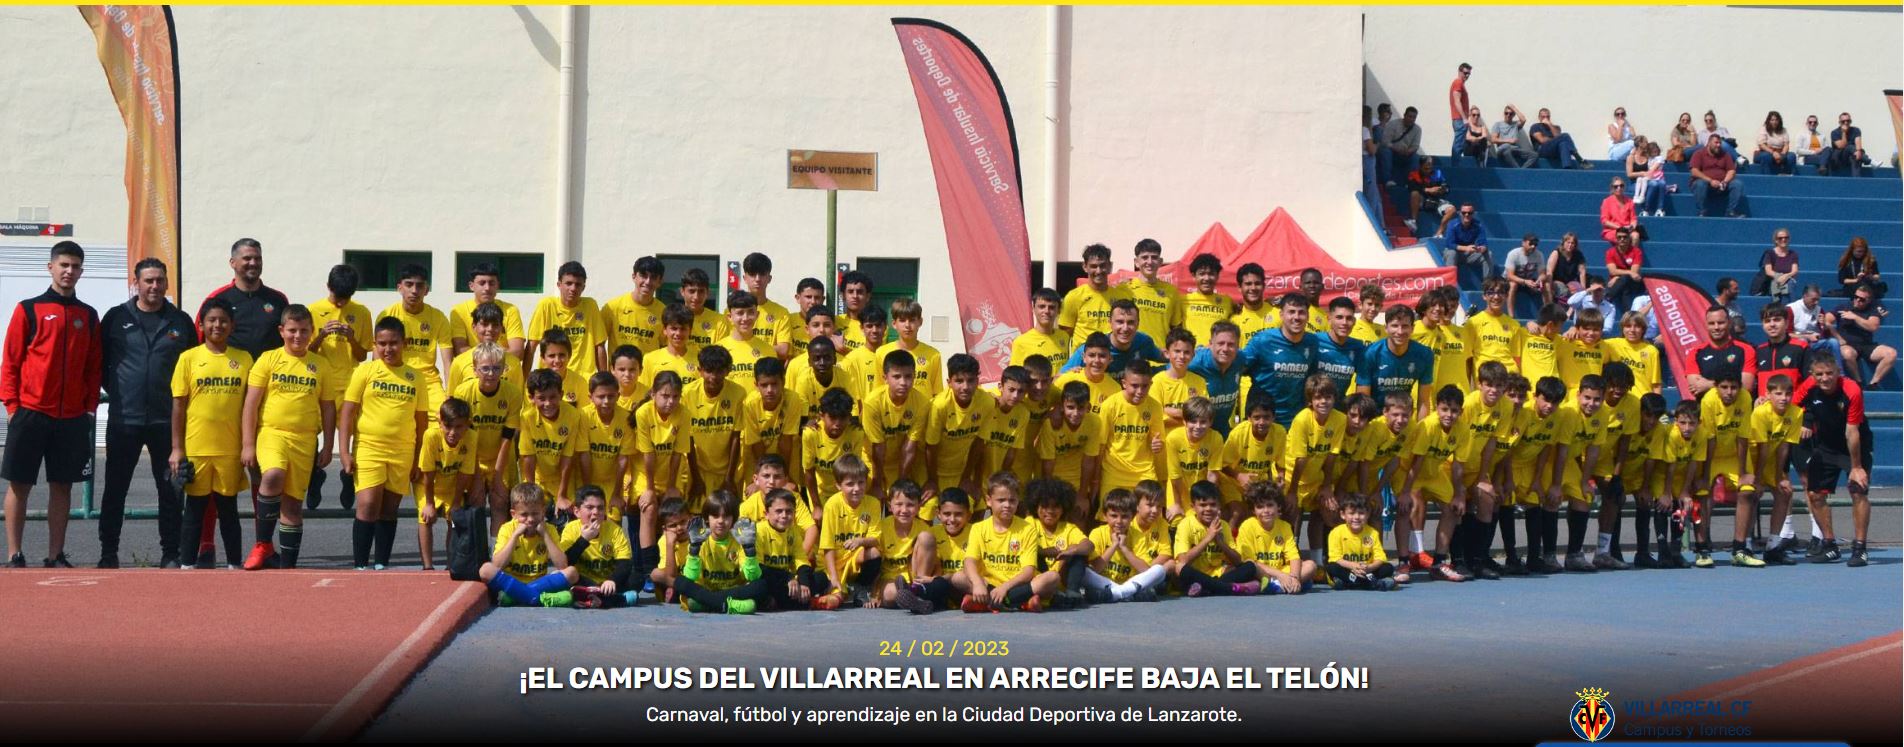 El Club Deportivo Orientación Marítima Lanzarote y el Villarreal CF agradecen e informan a los aficionados del éxito del campus realizado estos días